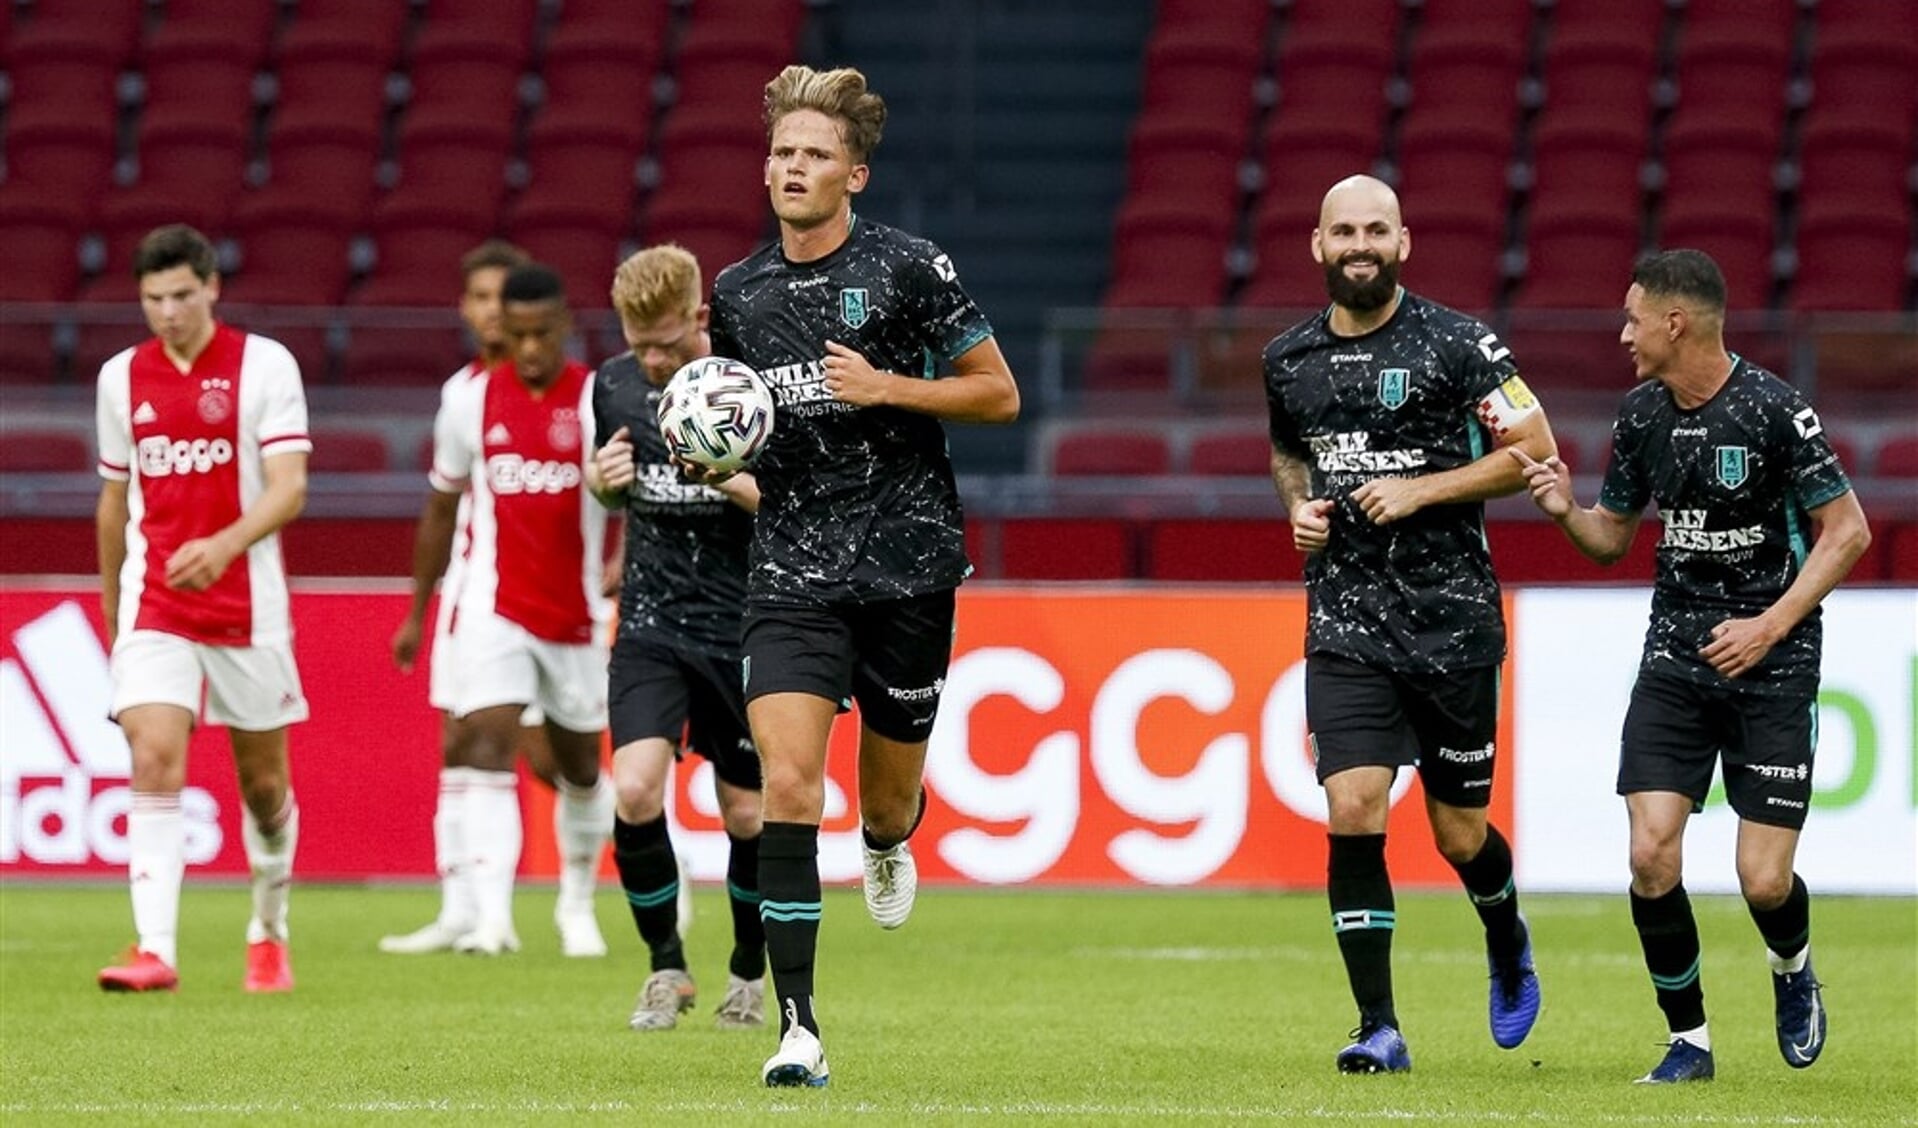 Teun van Grunsven na zijn goal tegen Ajax. (Foto: RKC)